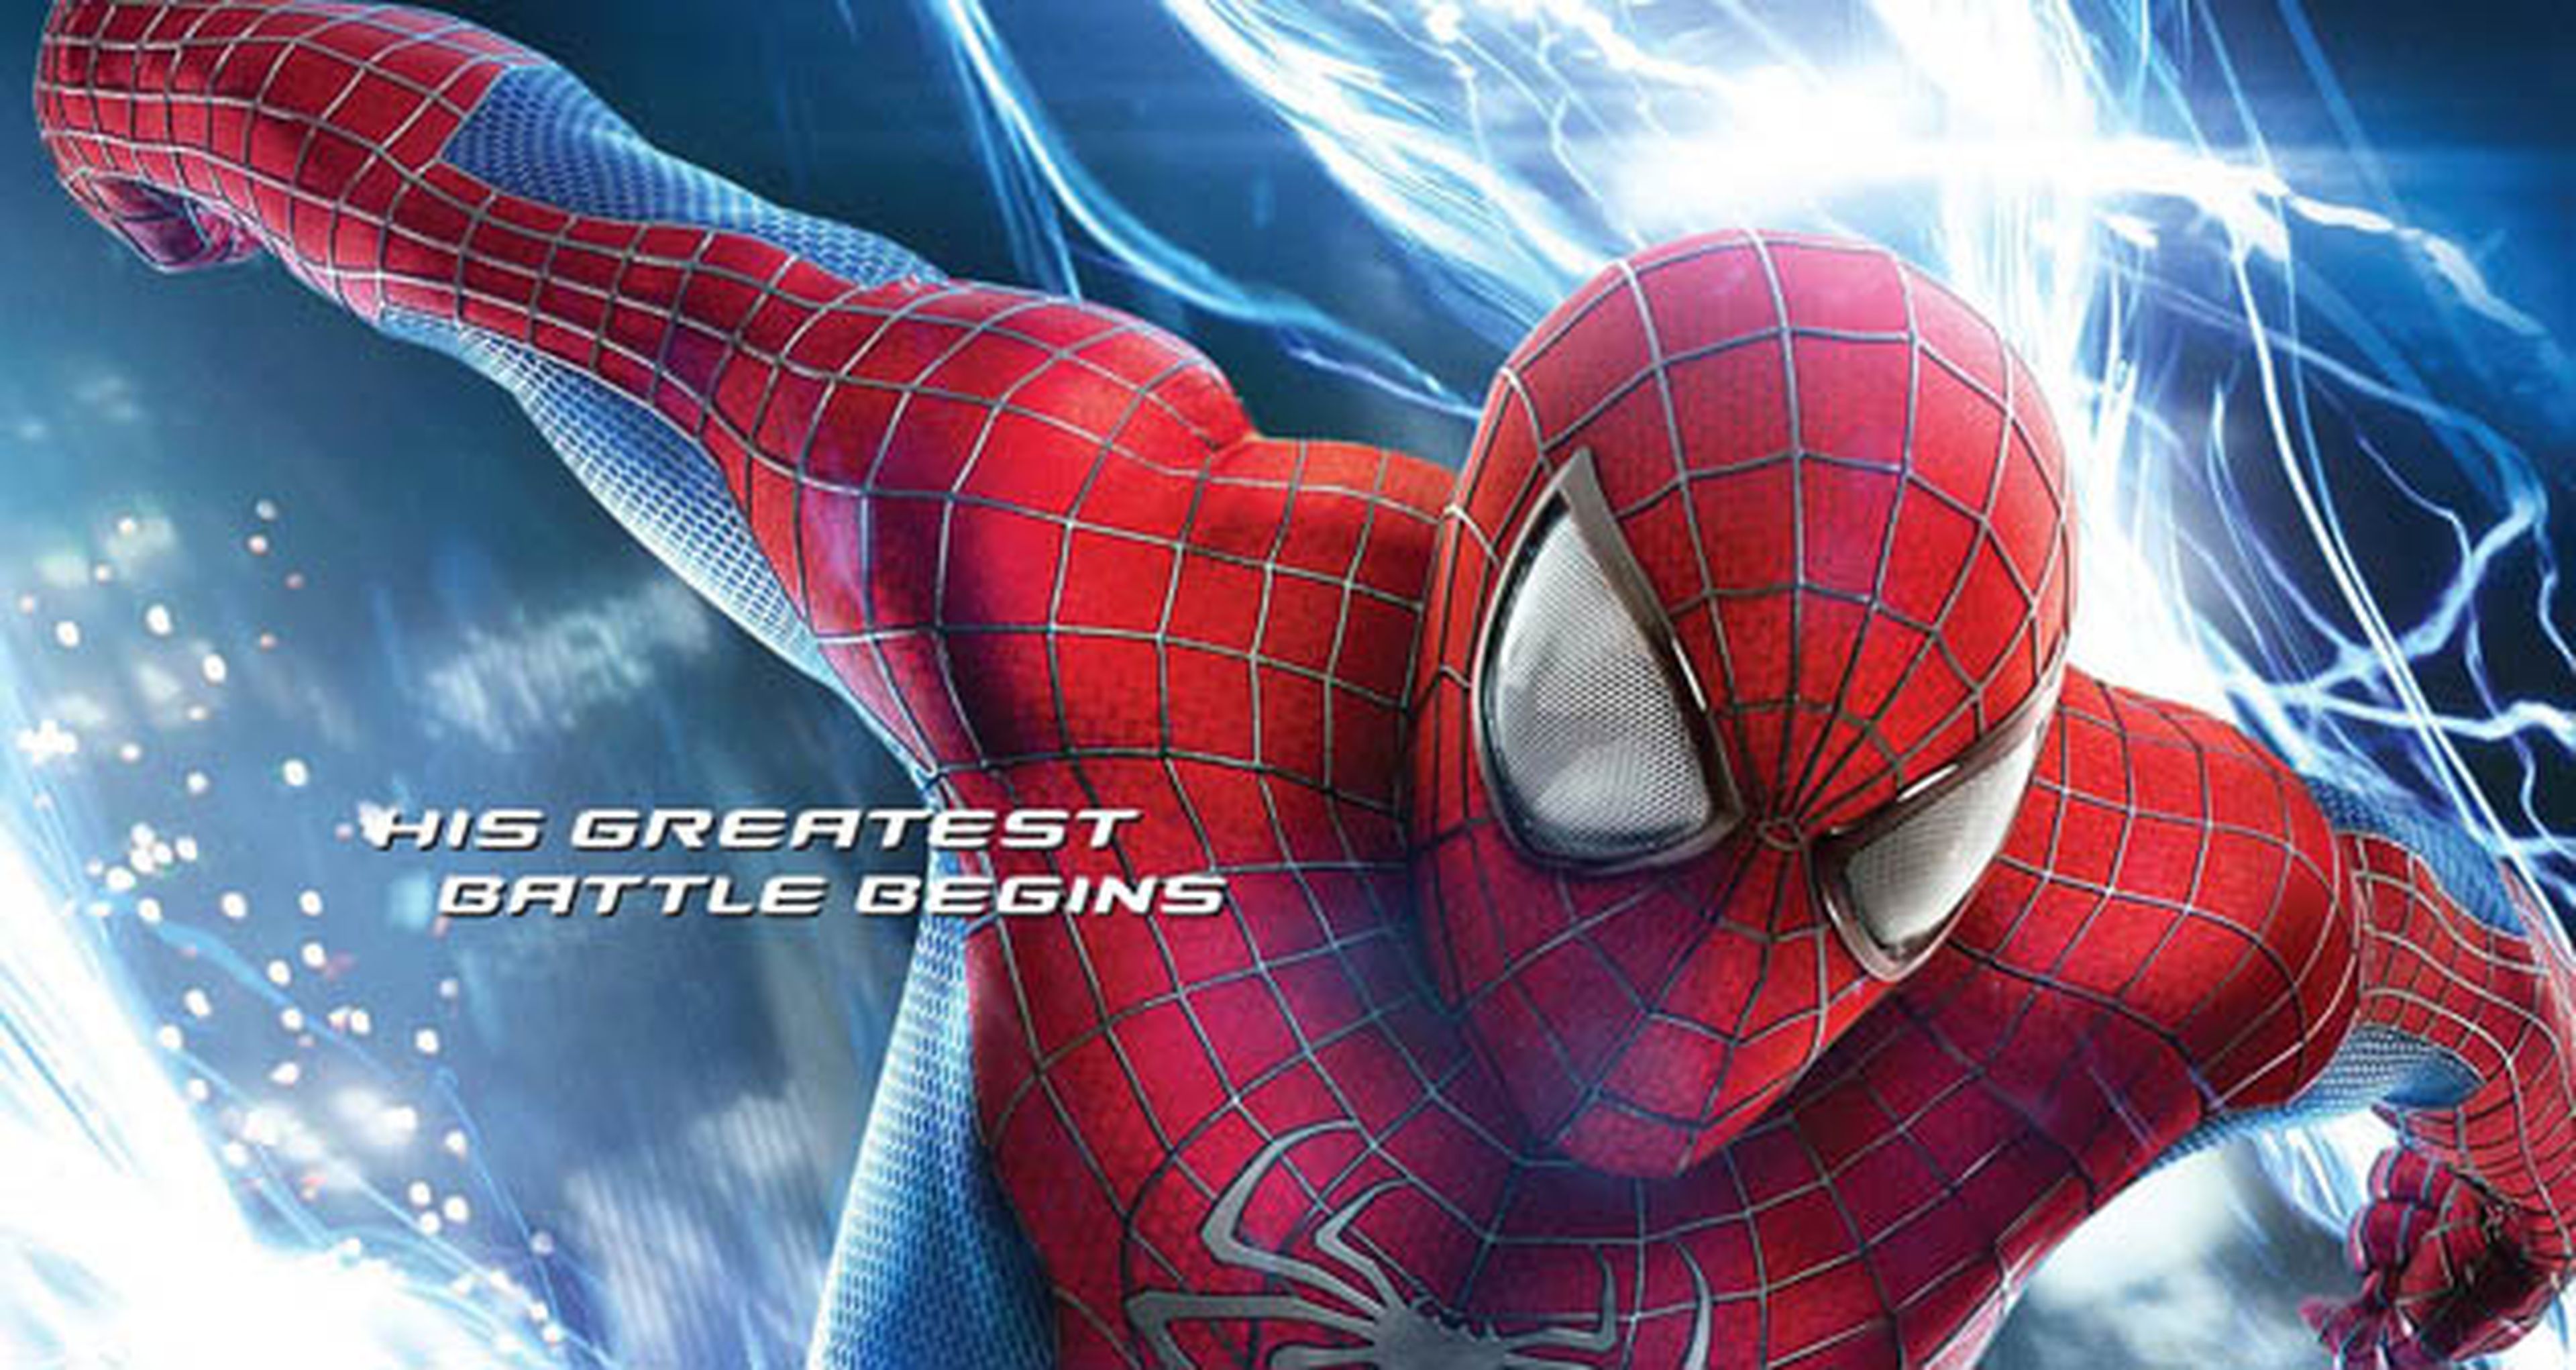 Nuevos pósters y fotos de The Amazing Spider-man 2